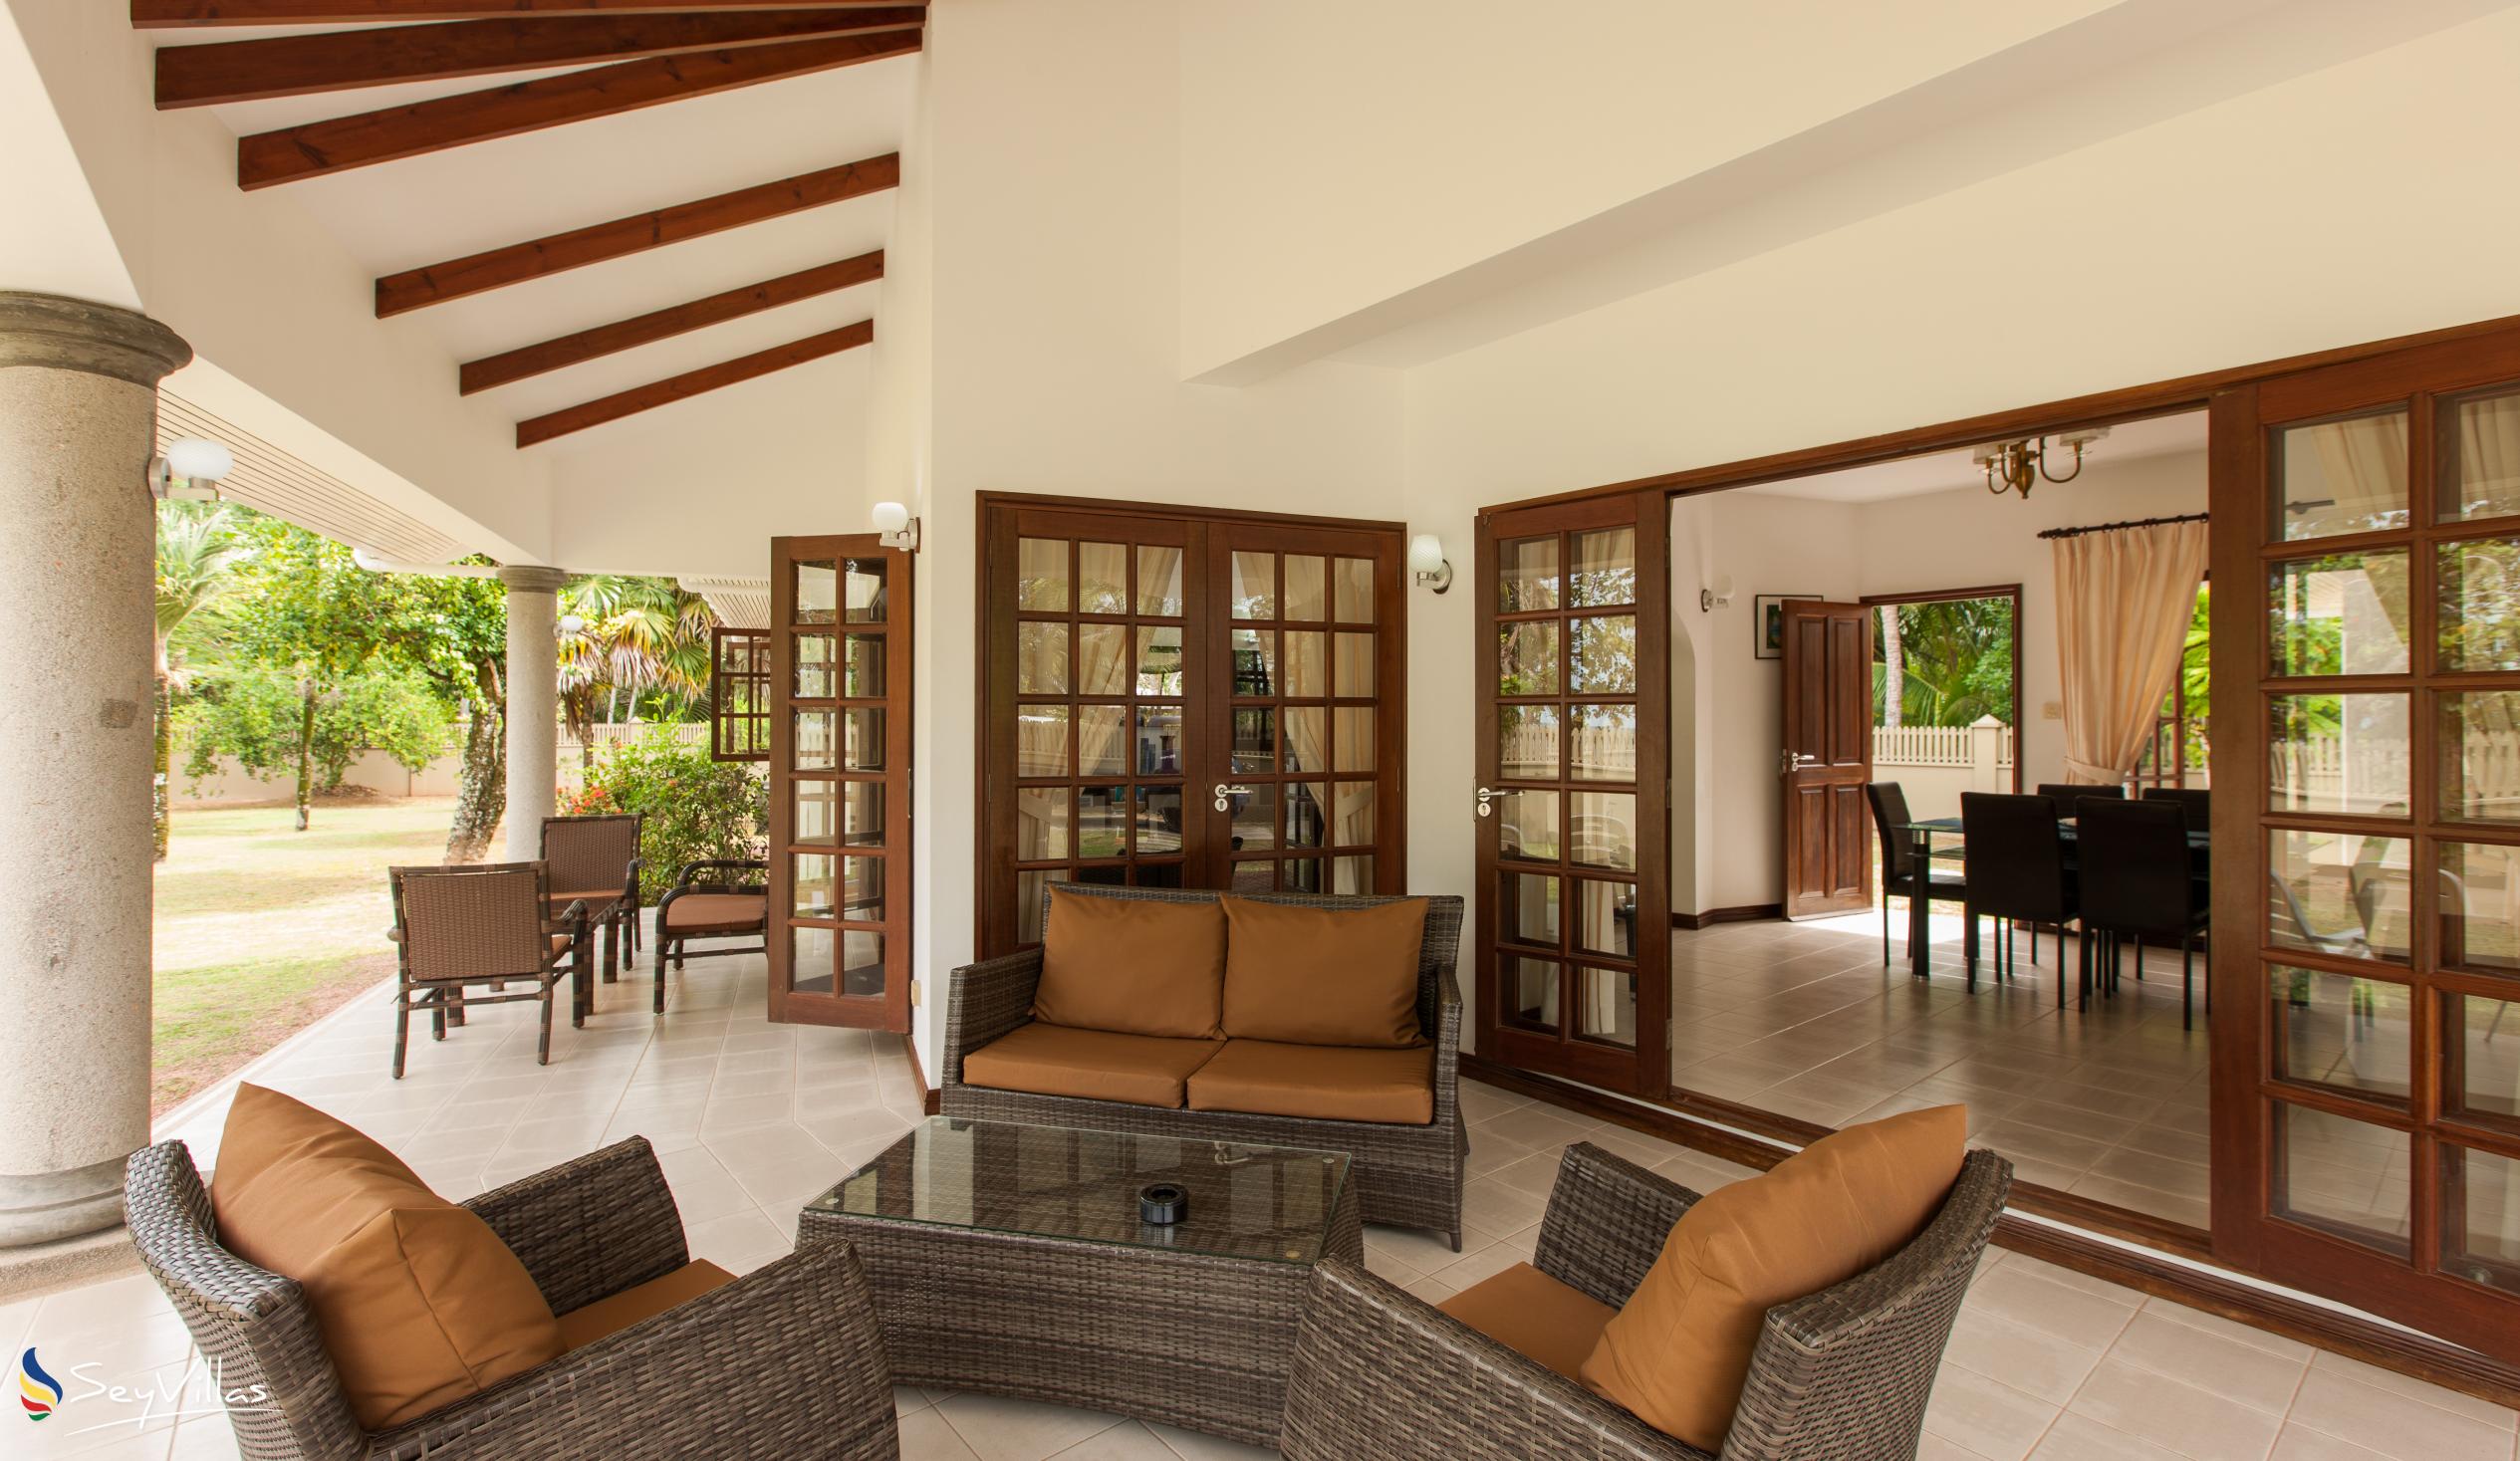 Photo 26: Villa Saint Sauveur - Indoor area - Praslin (Seychelles)